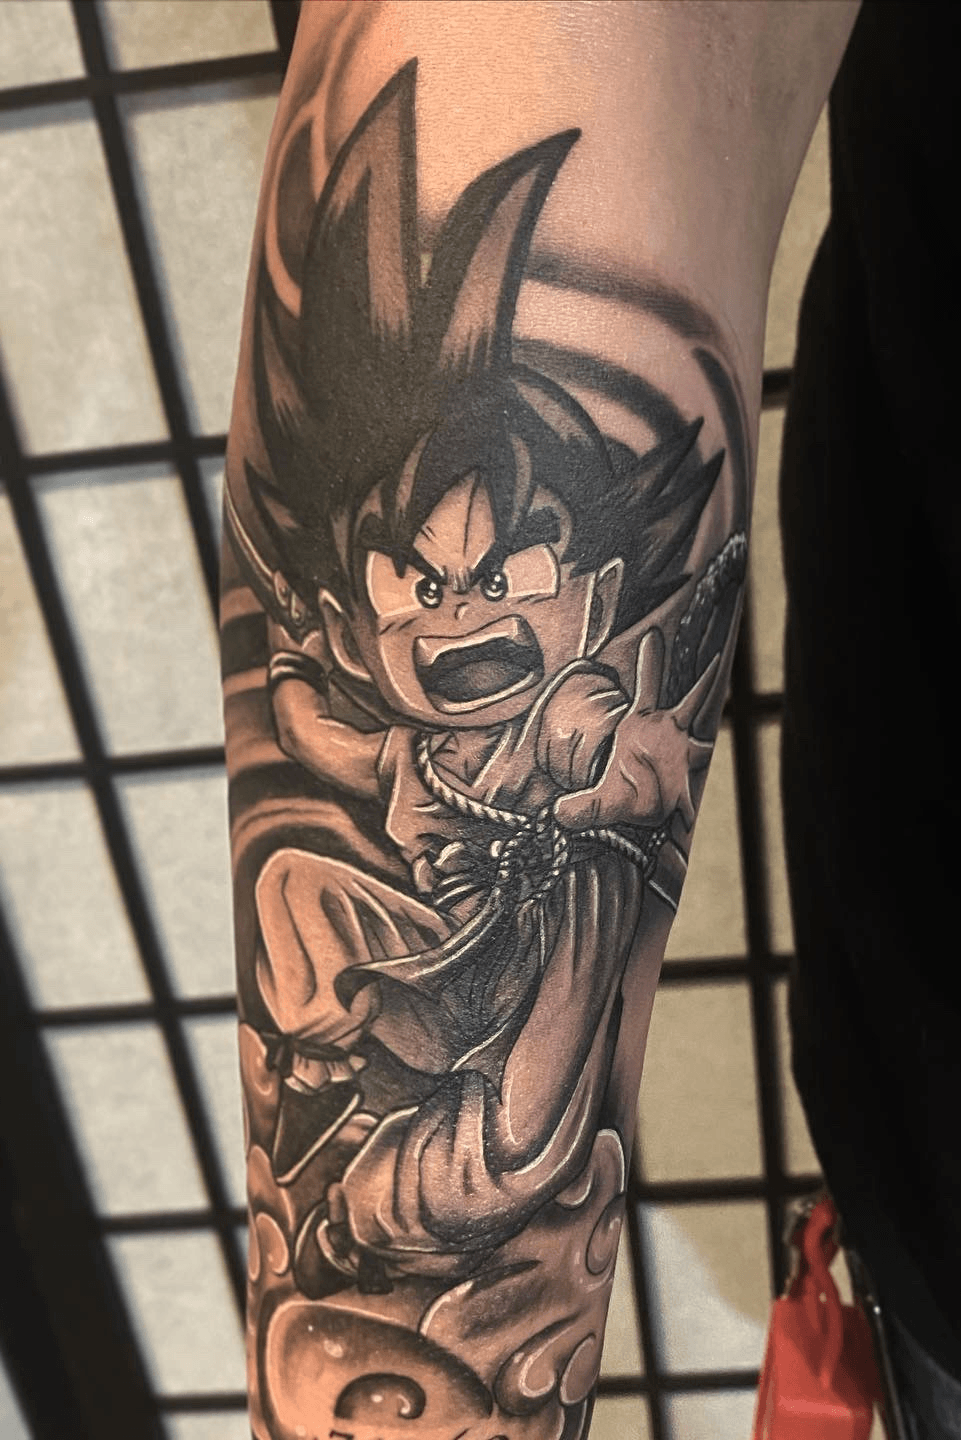 Kid Goku tattoo by me  rdbz